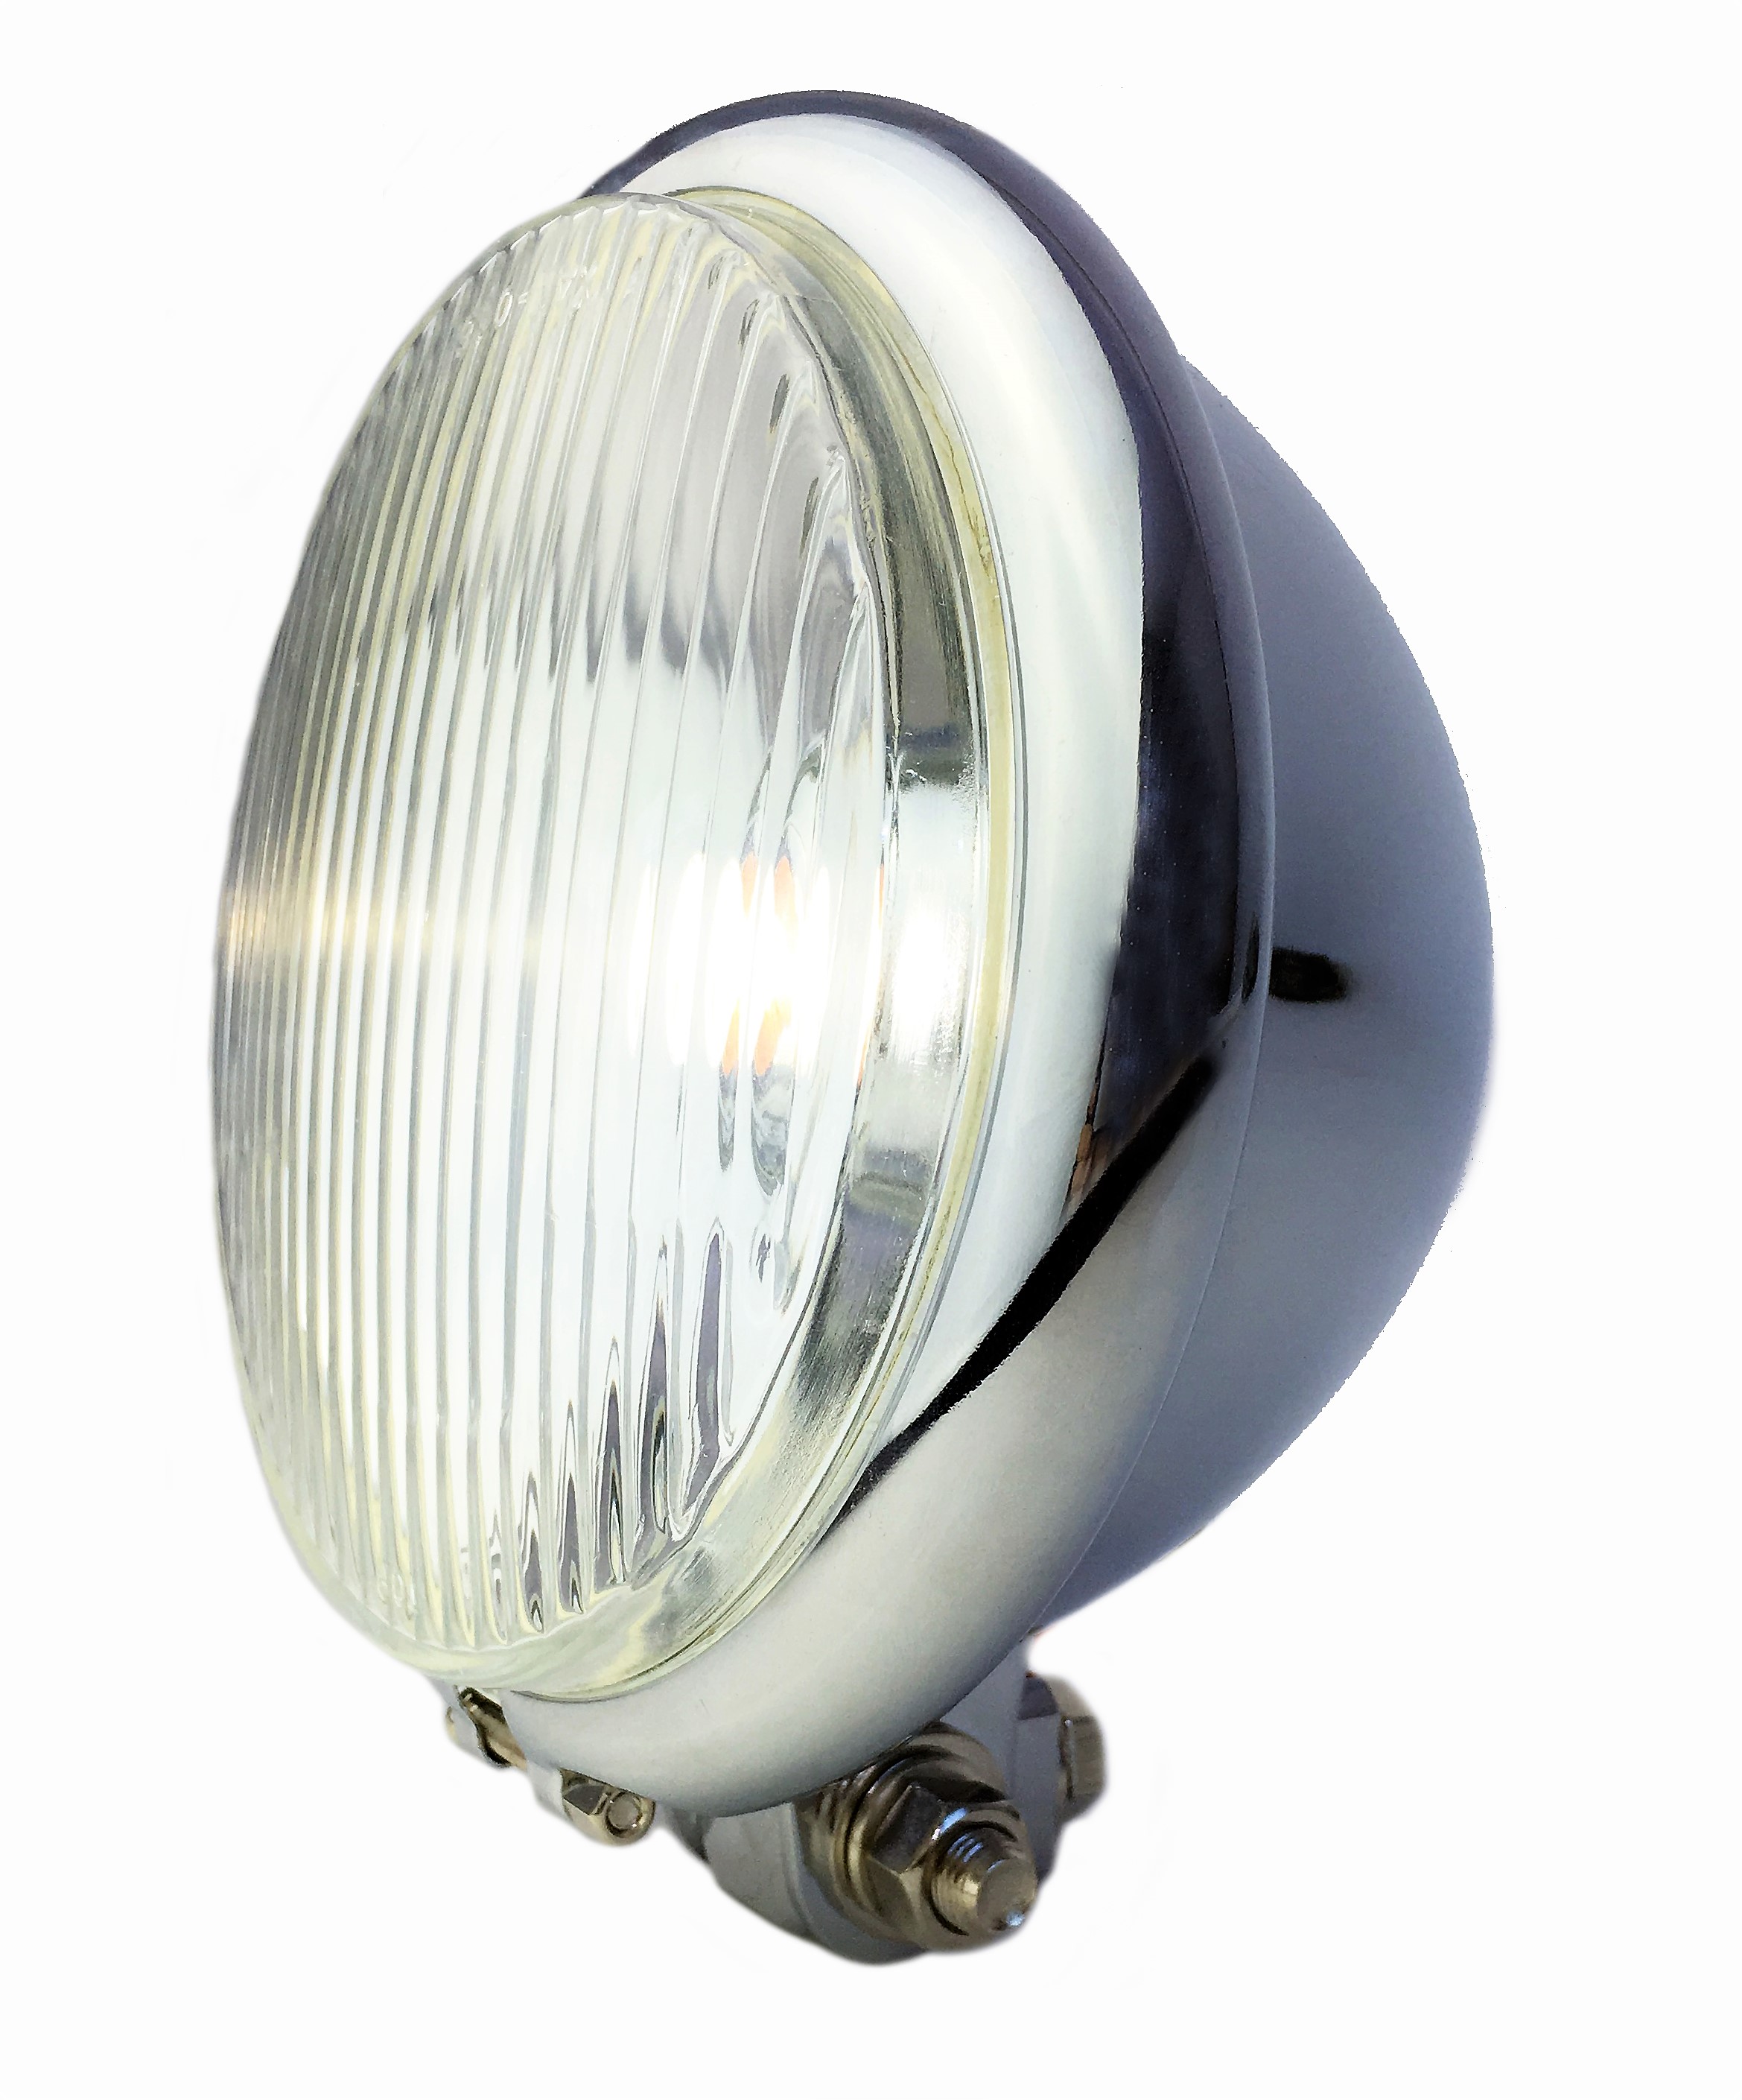 Old Bates Frontlampe LED, 15cm, verchromt Batterie